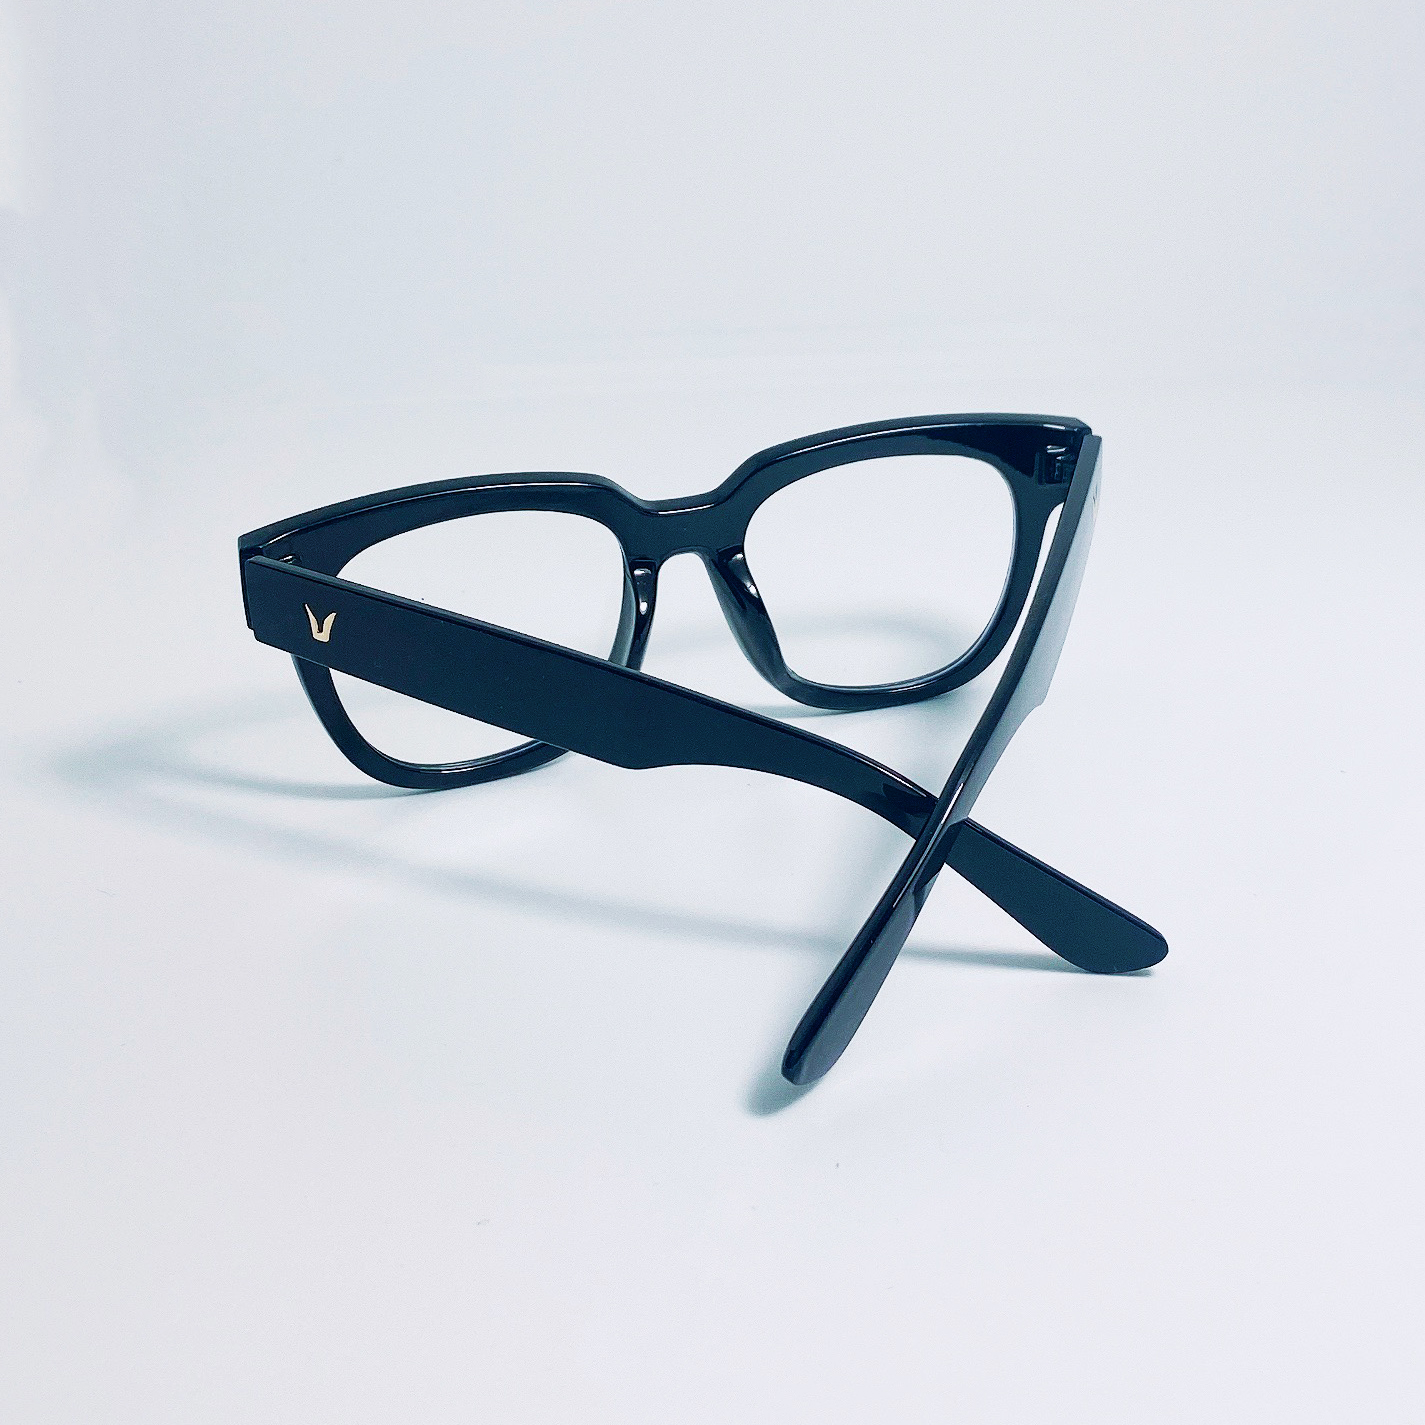 Mắt kính giả cận cao cấp Jun Secret gọng nhựa bảng to, tròng kính 0 độ chống tia UV dành cho cả nam và nữ JSVGENTLETO